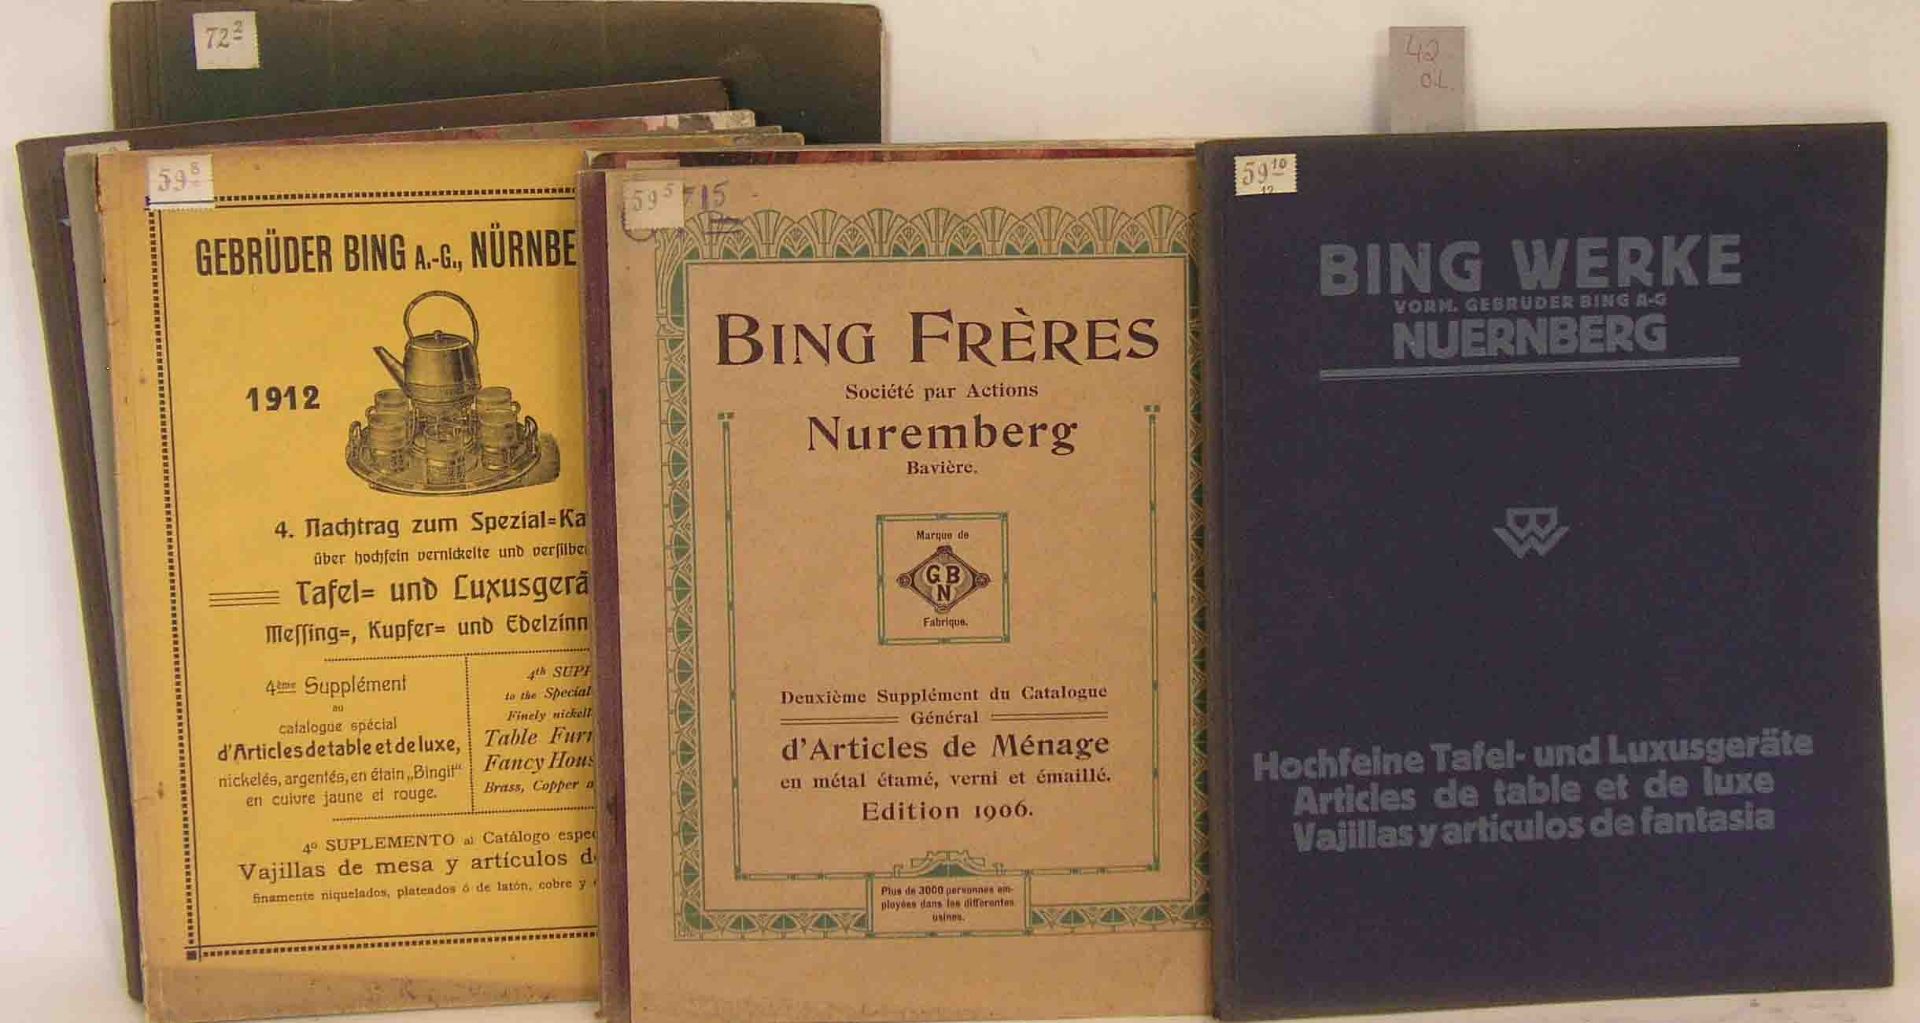 Bing Werke Nürnberg. Prospekte und Preislisten, neun Hefte aus den Jahren 1904 - 1907,1912 und